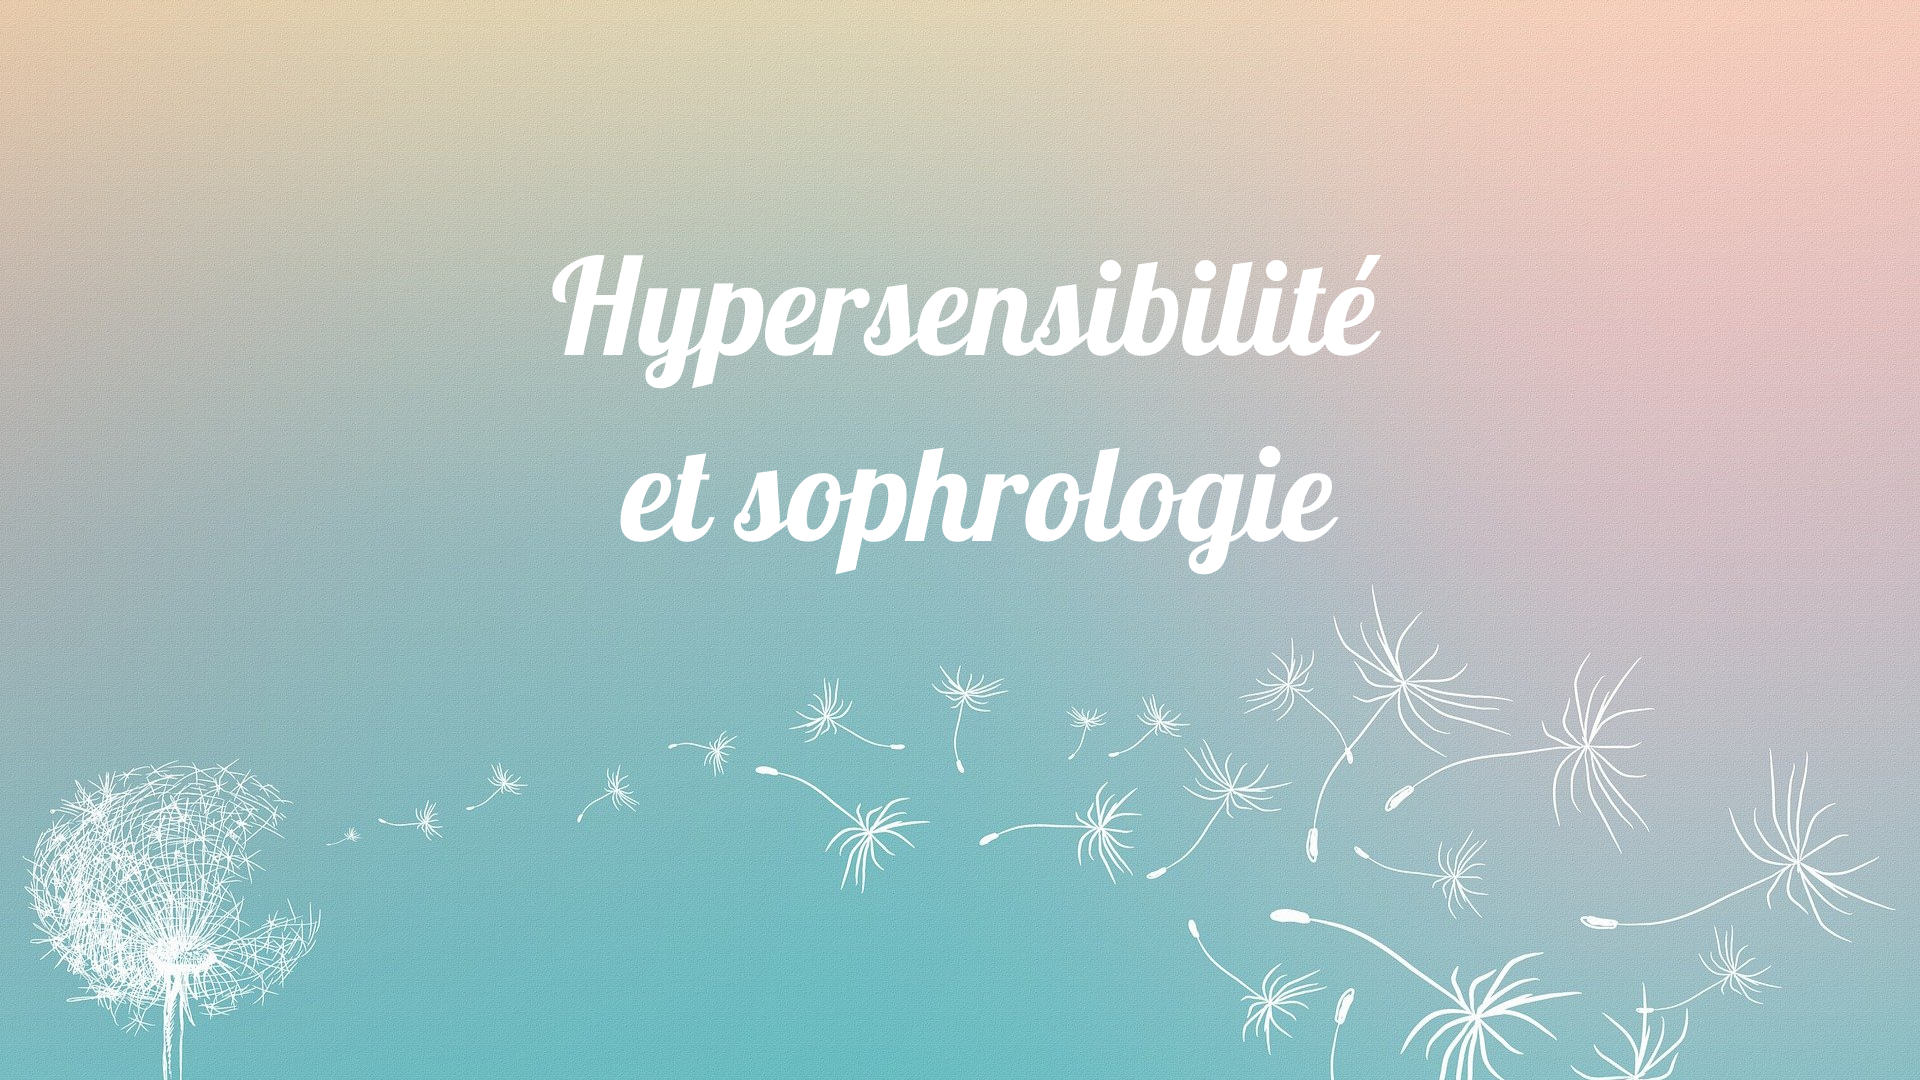 Mieux vivre son hypersensibilité grâce à la sophrologie